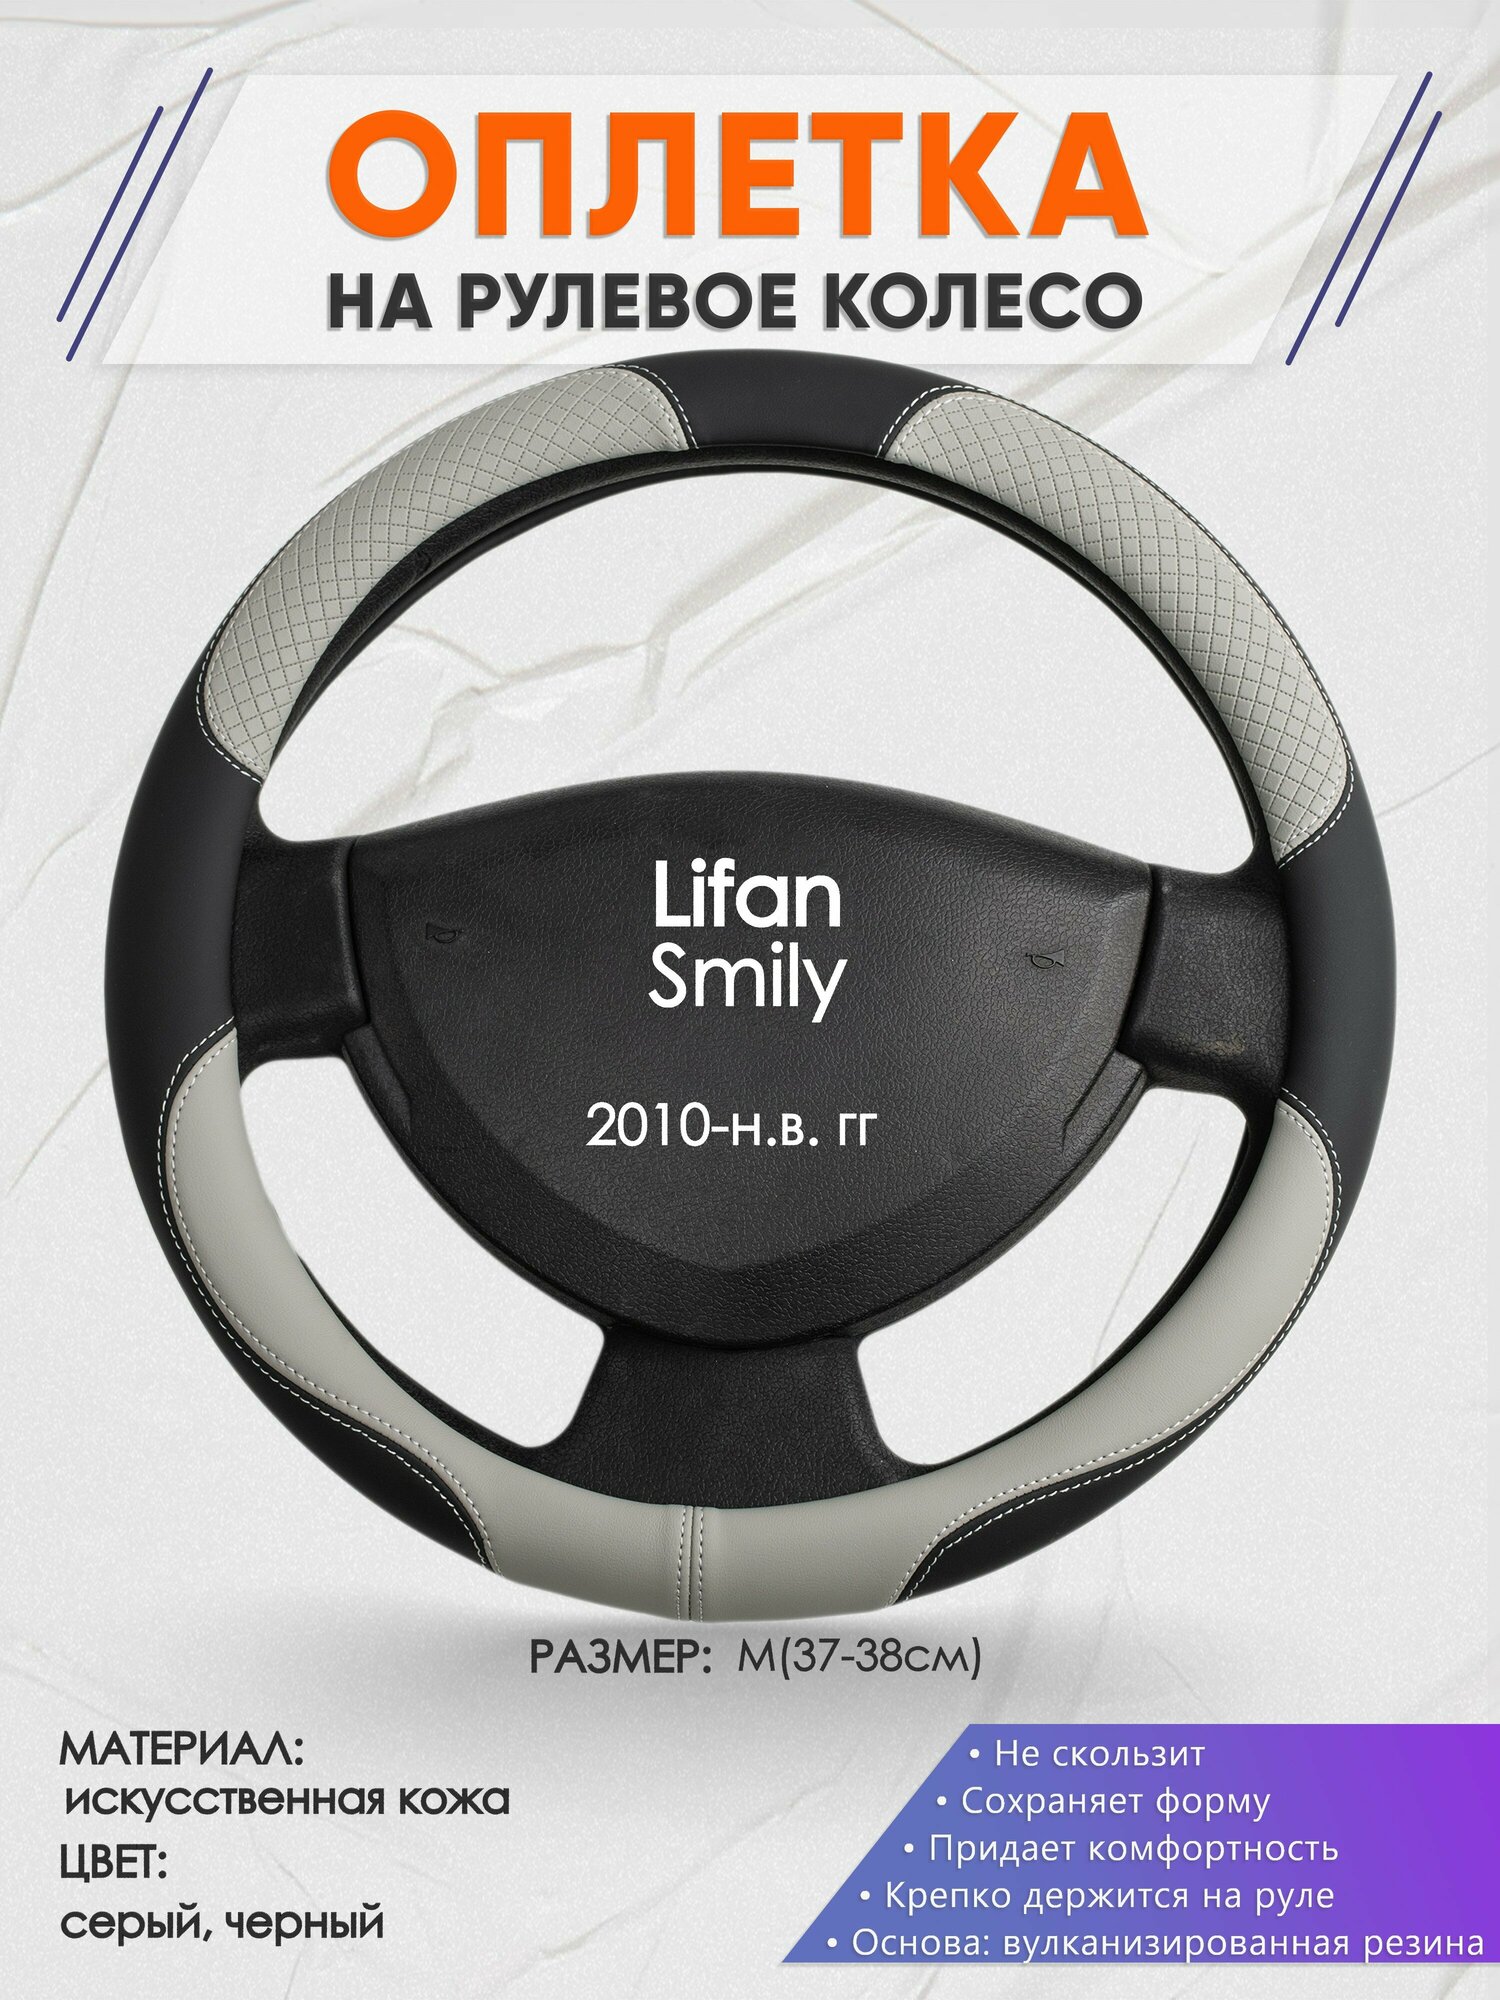 Оплетка на руль для Lifan Smily (Лифан Смили) 2010-н. в M(37-38см) Искусственная кожа 80